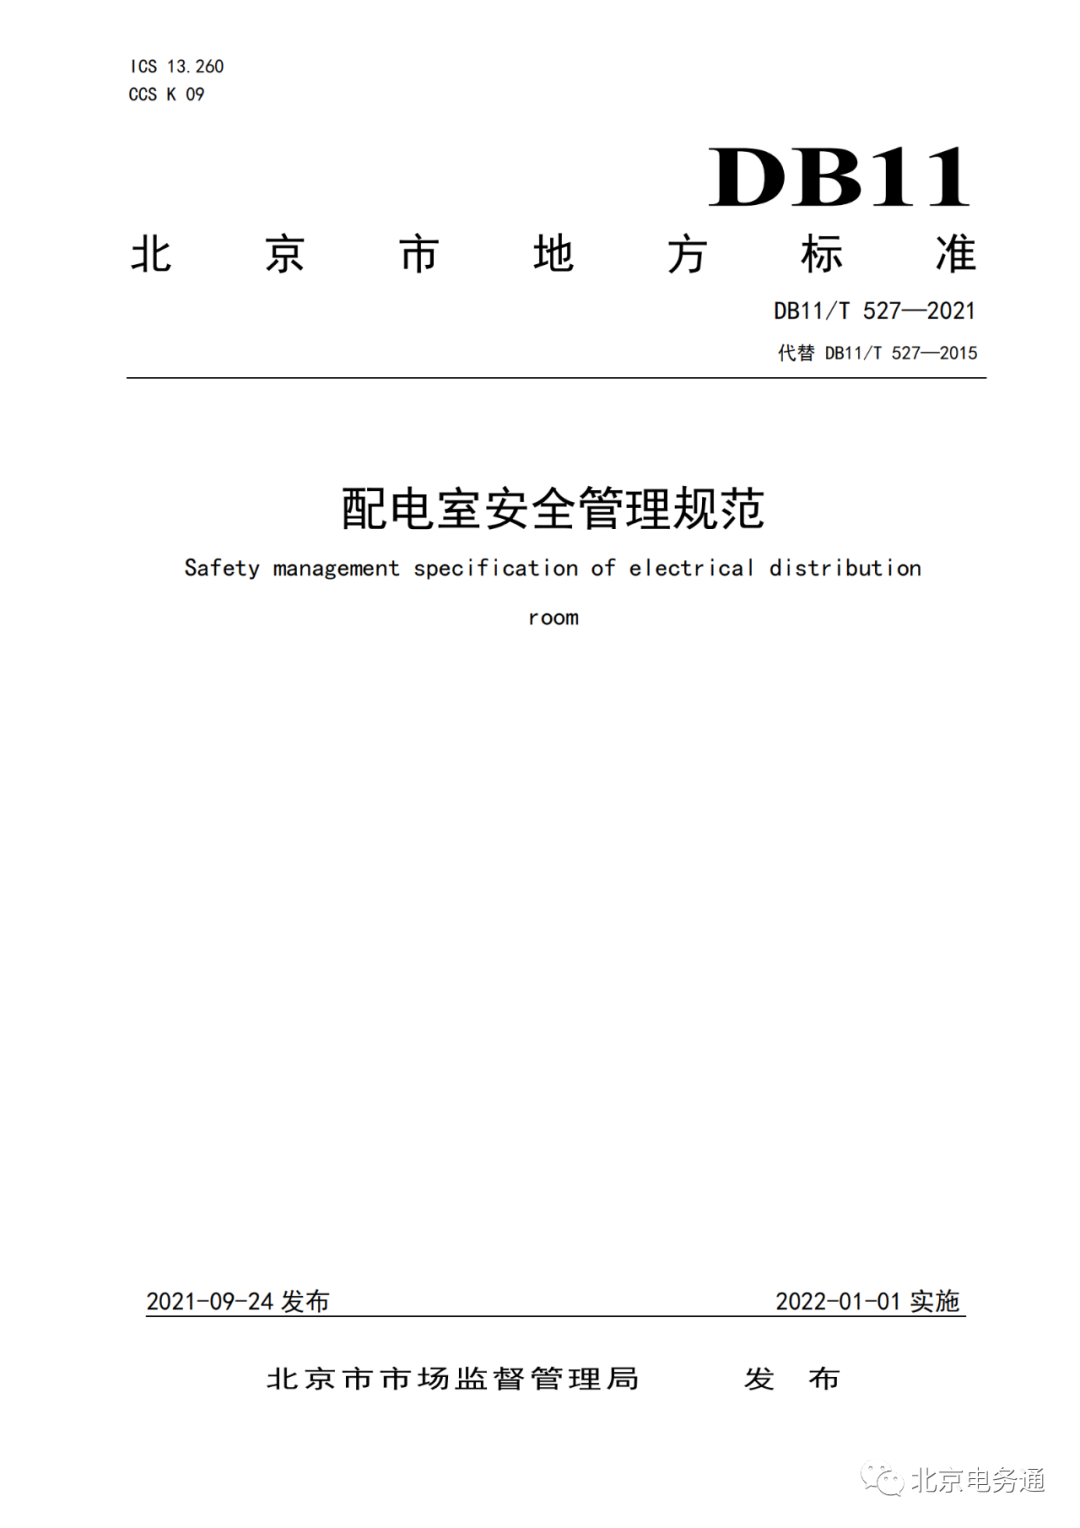 立标杆 推标准 《配电室安全管理规范》北京地方标准发布